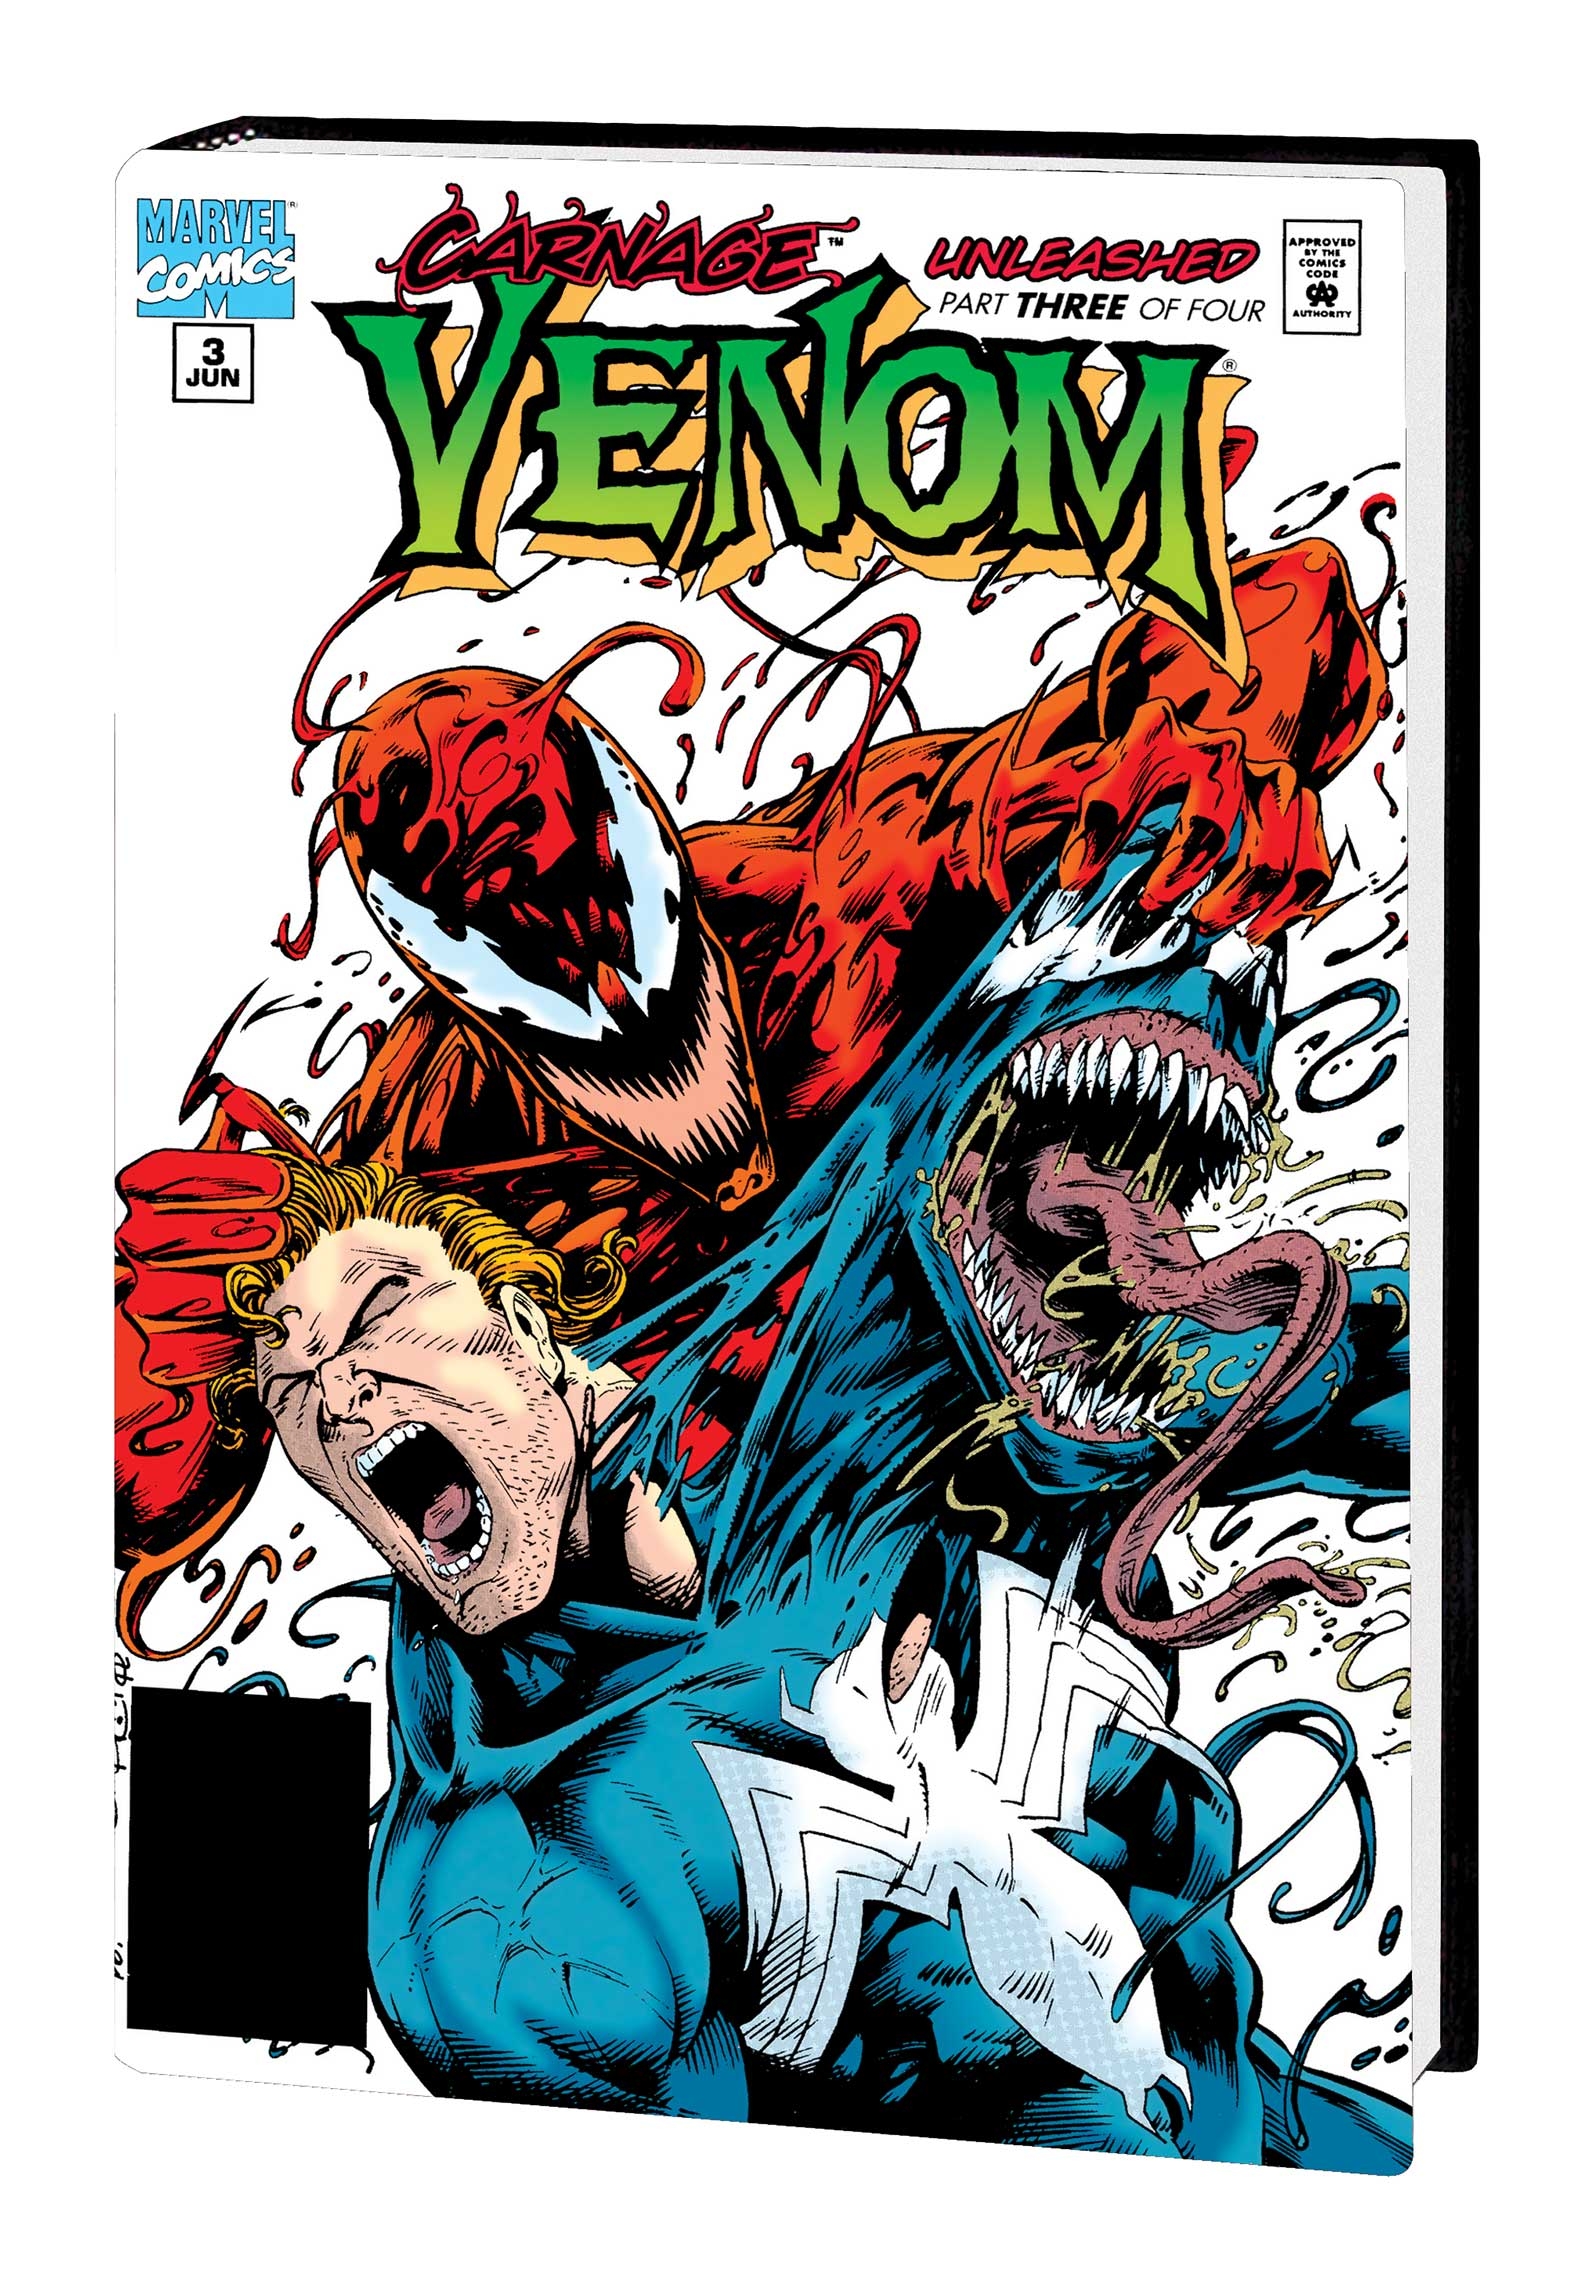 Venom Omnibus Venomnibus Hardcover Volume 1 Wildman Direct Market Variant New Printing